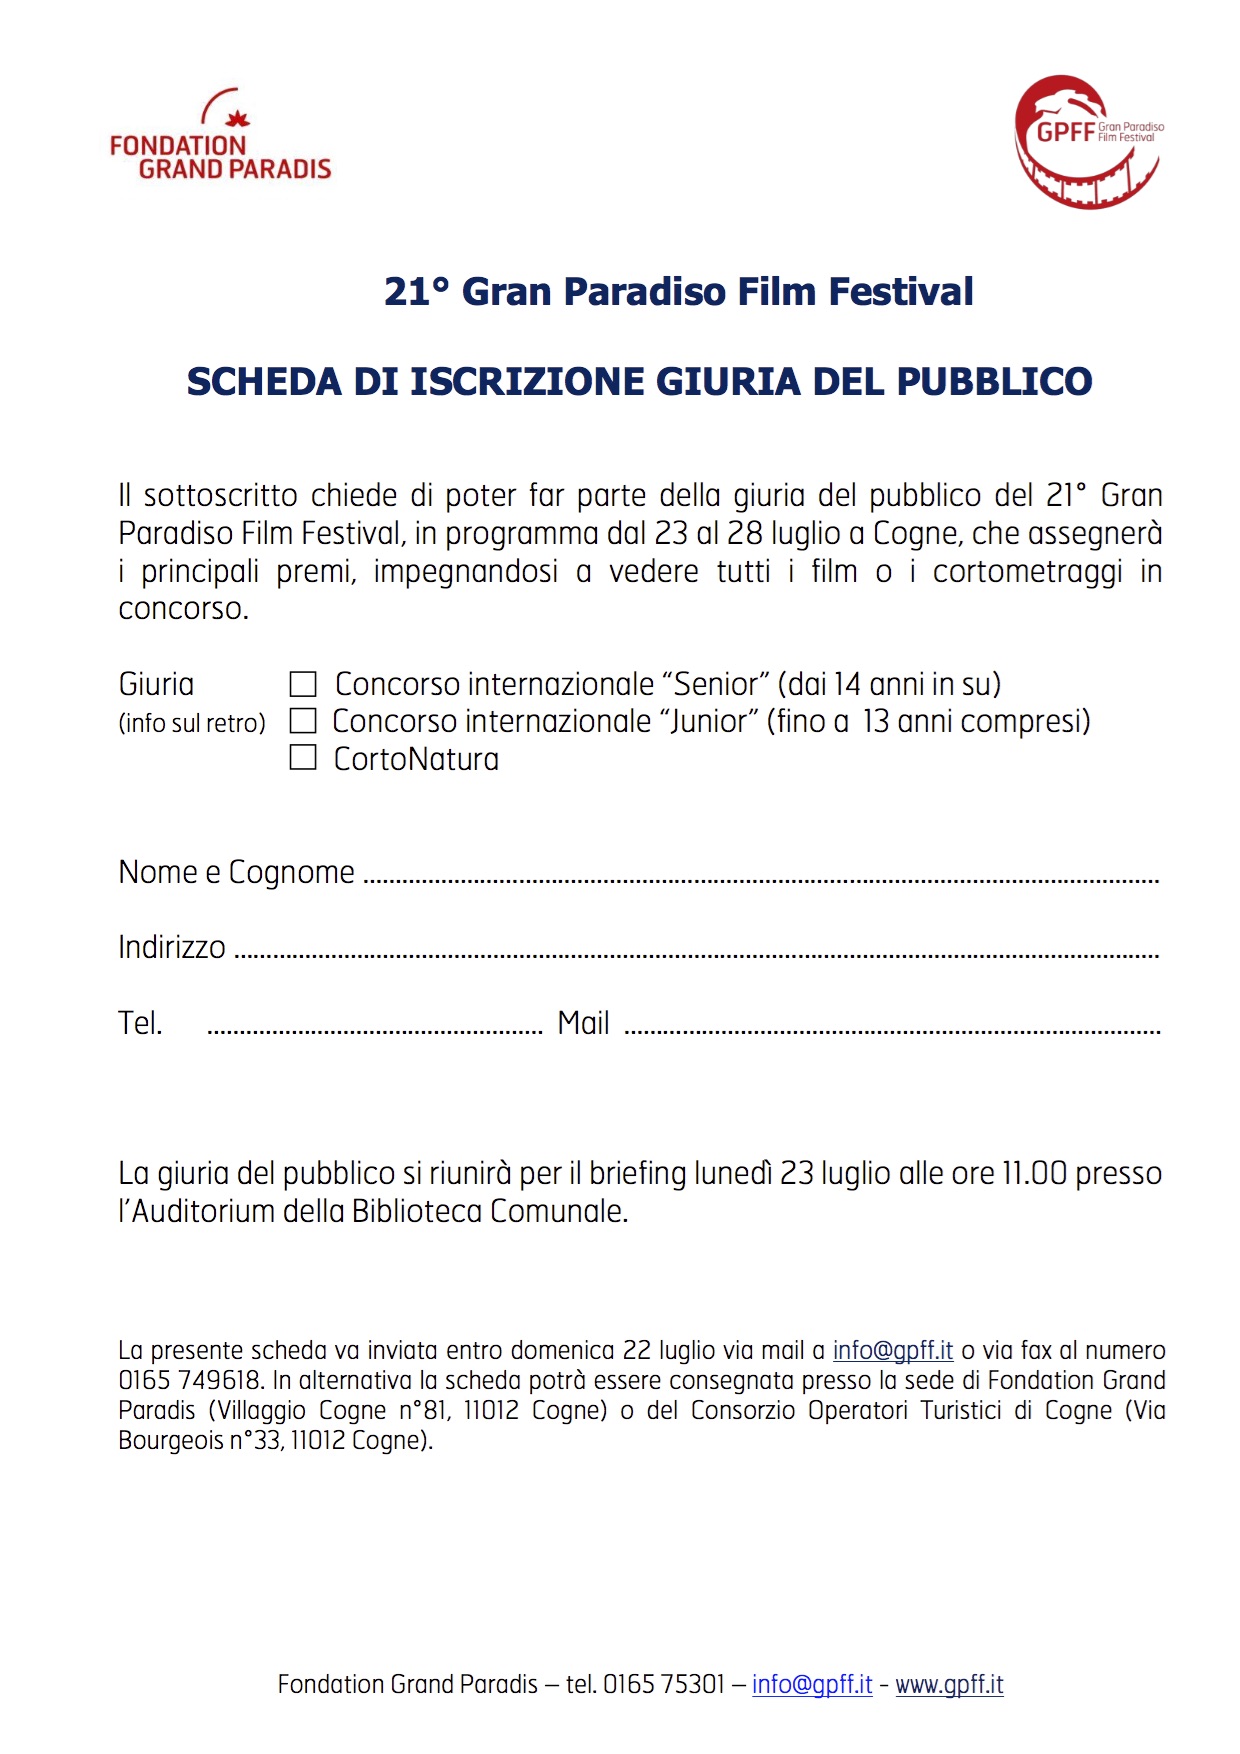 GPFF Scheda iscrizione giuria pubblico 2018